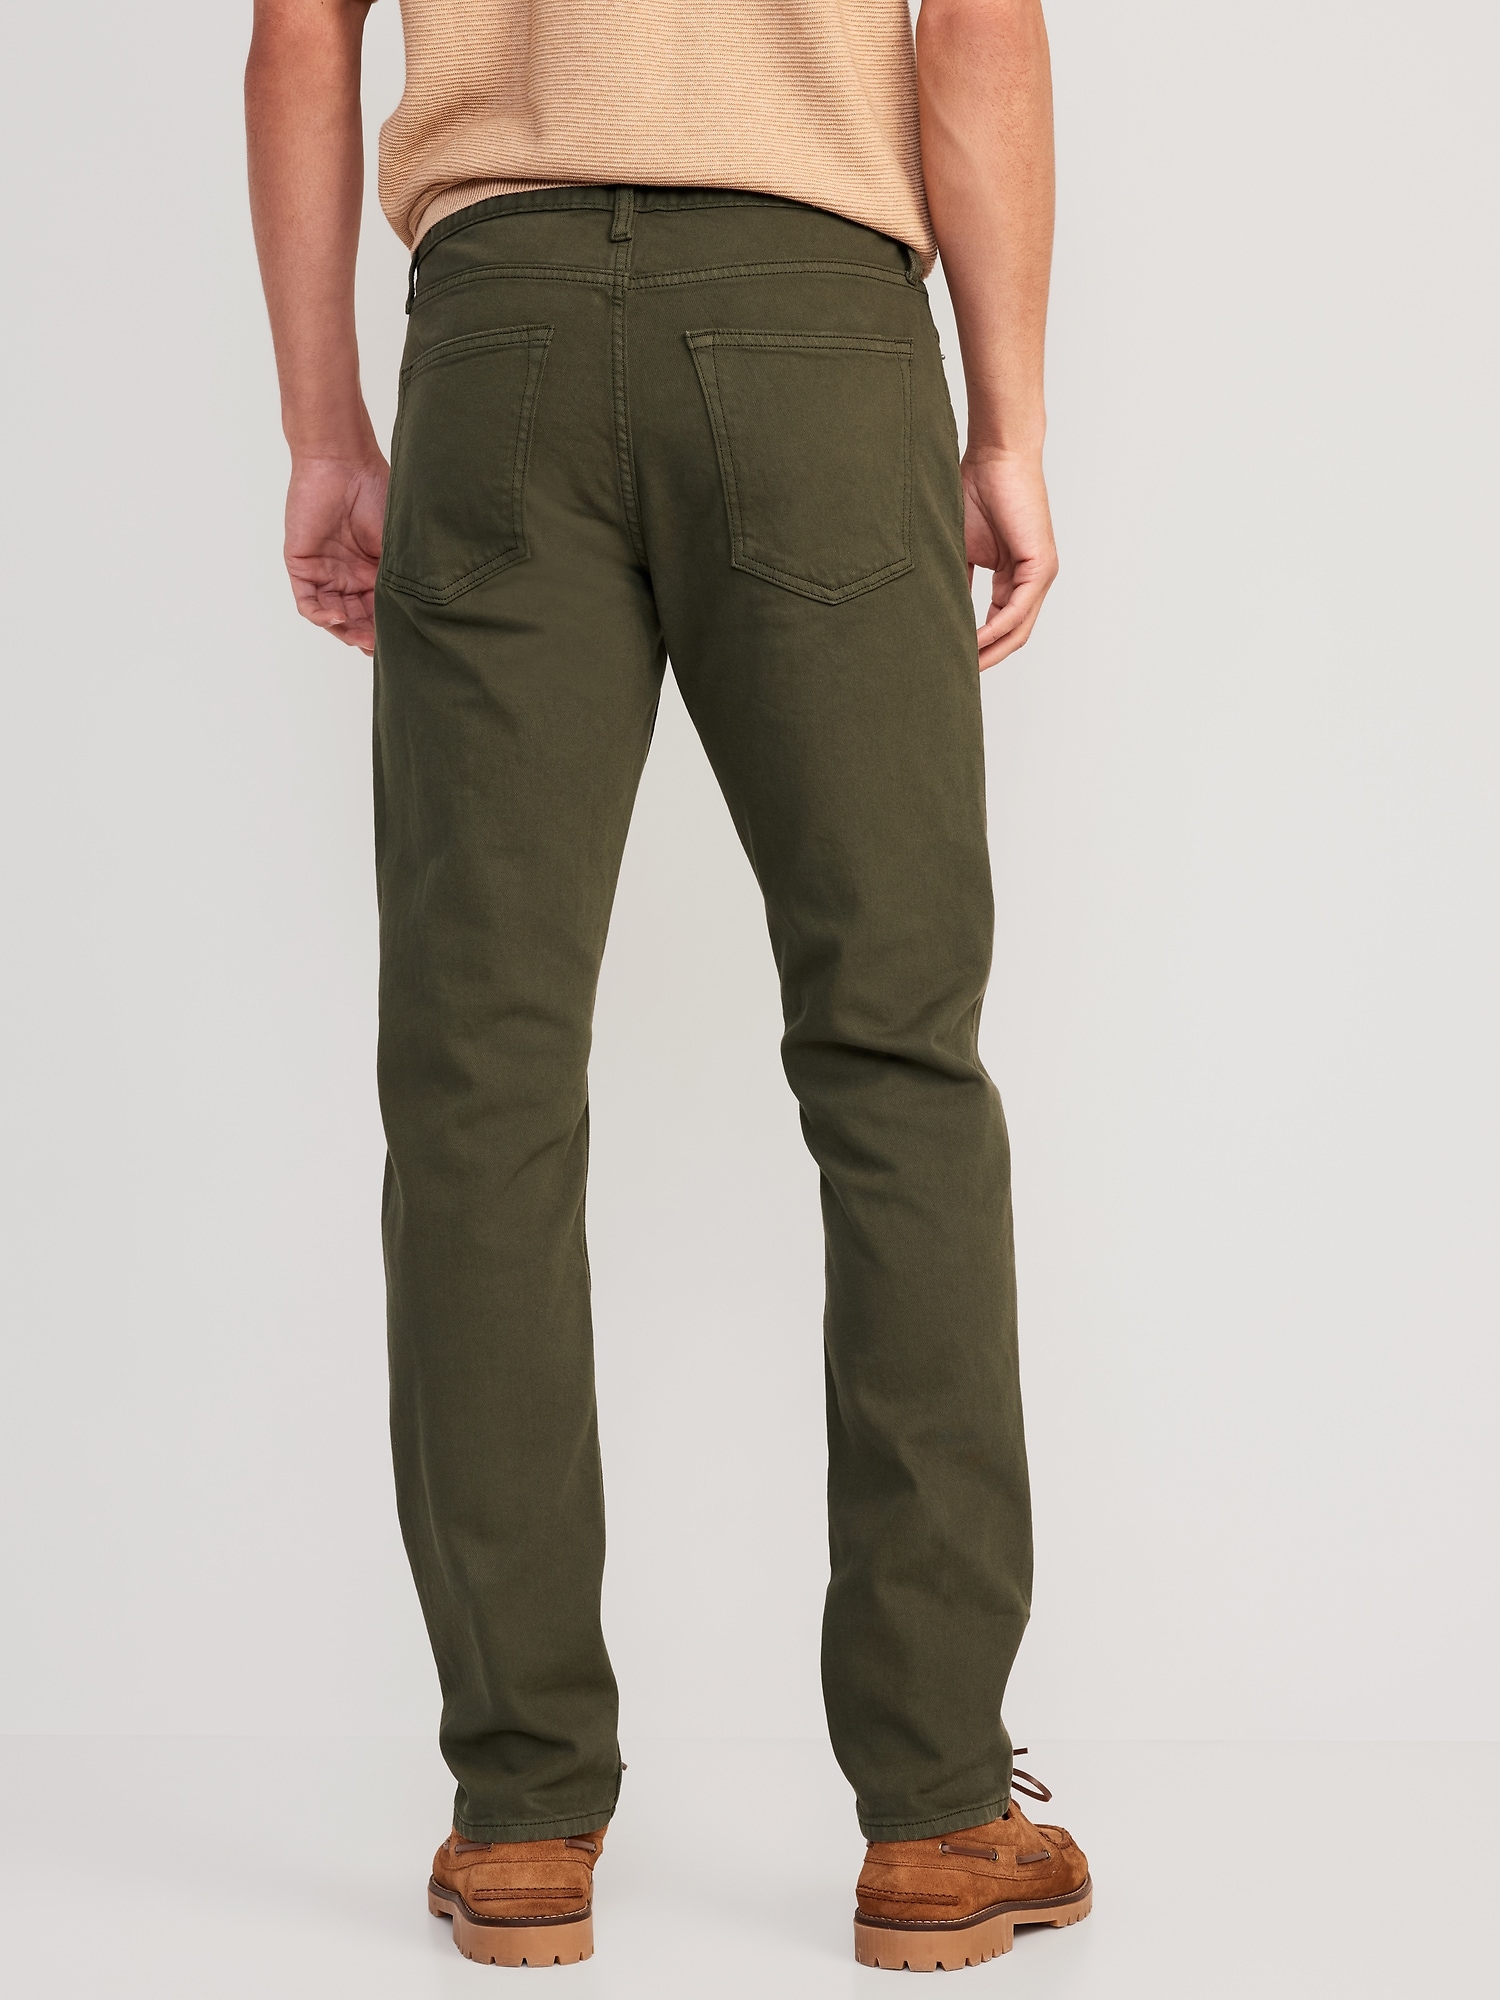 Slim Five-Pocket Pants for Men | Old Navy